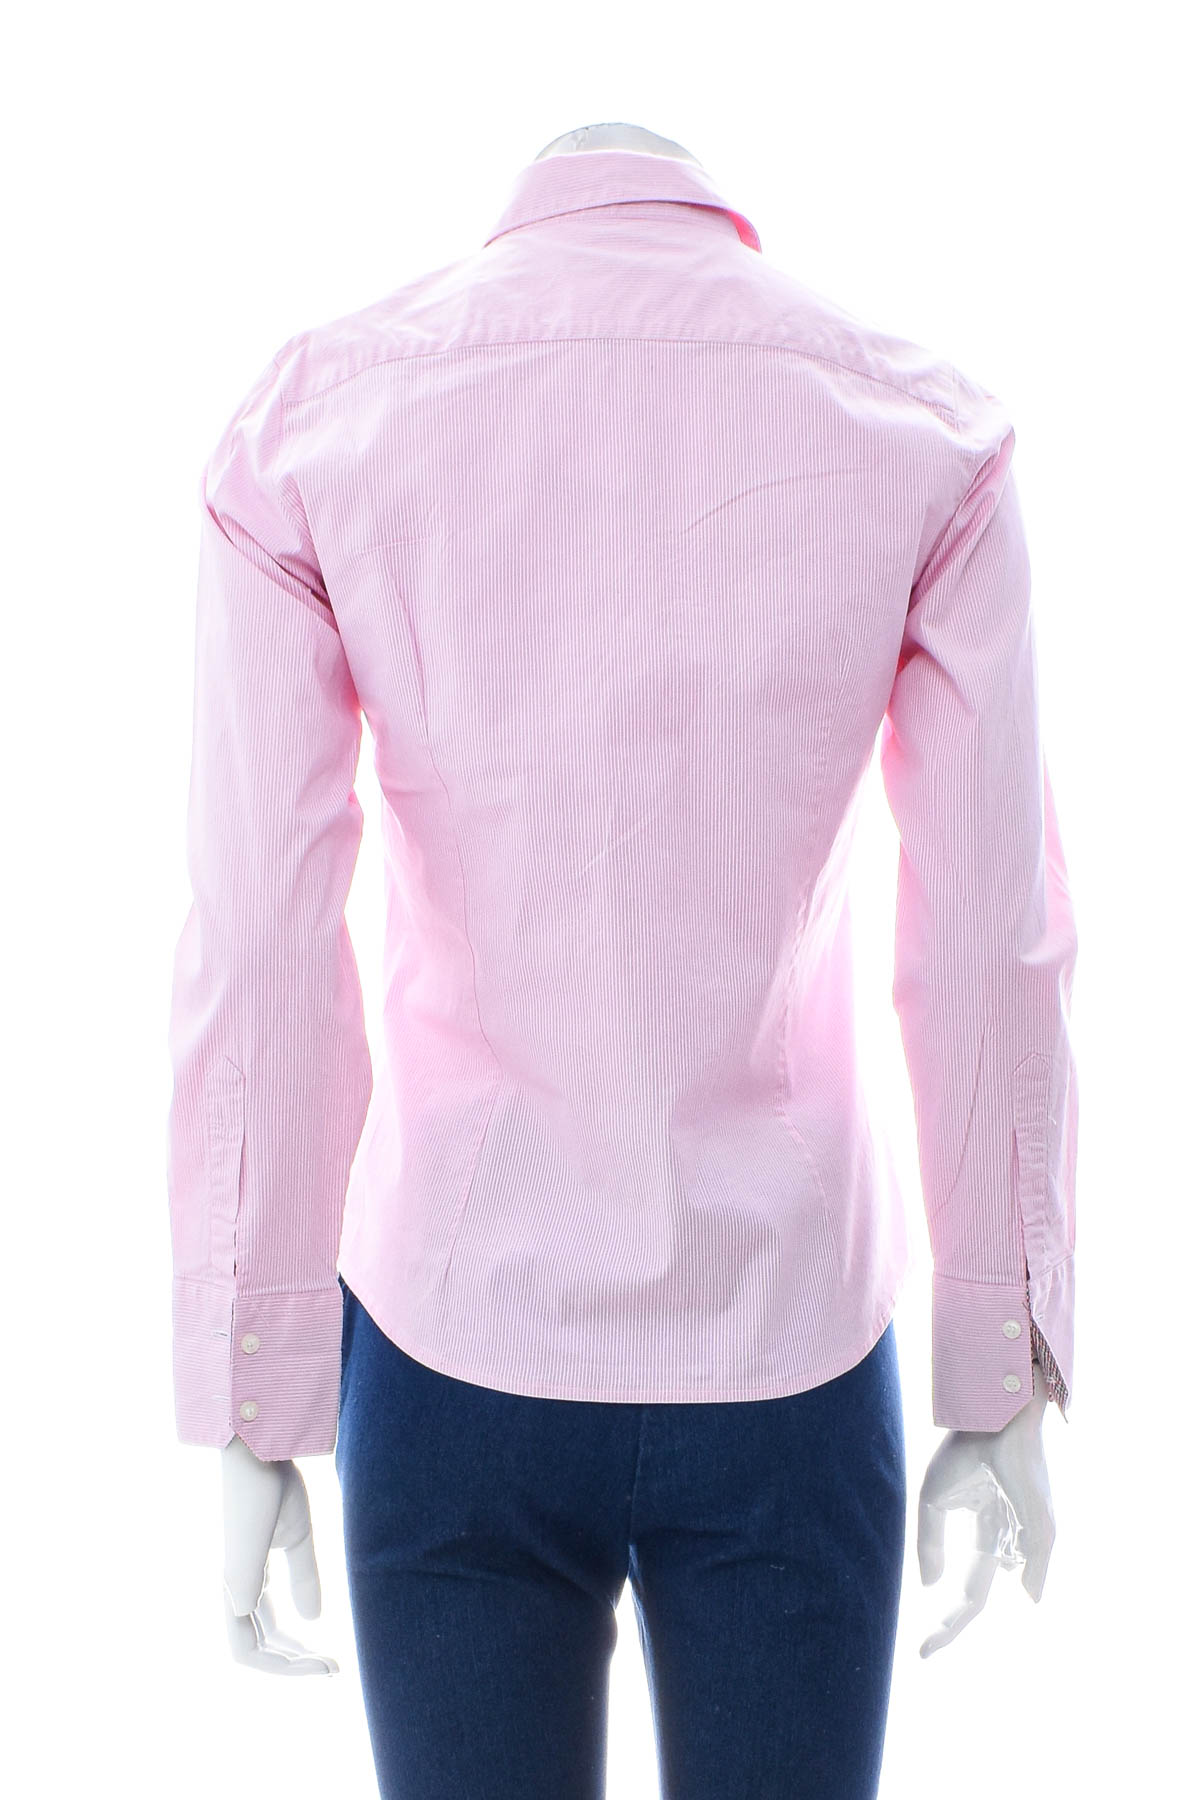 Γυναικείо πουκάμισο - POLO JEANS CO. RALPH LAUREN - 1